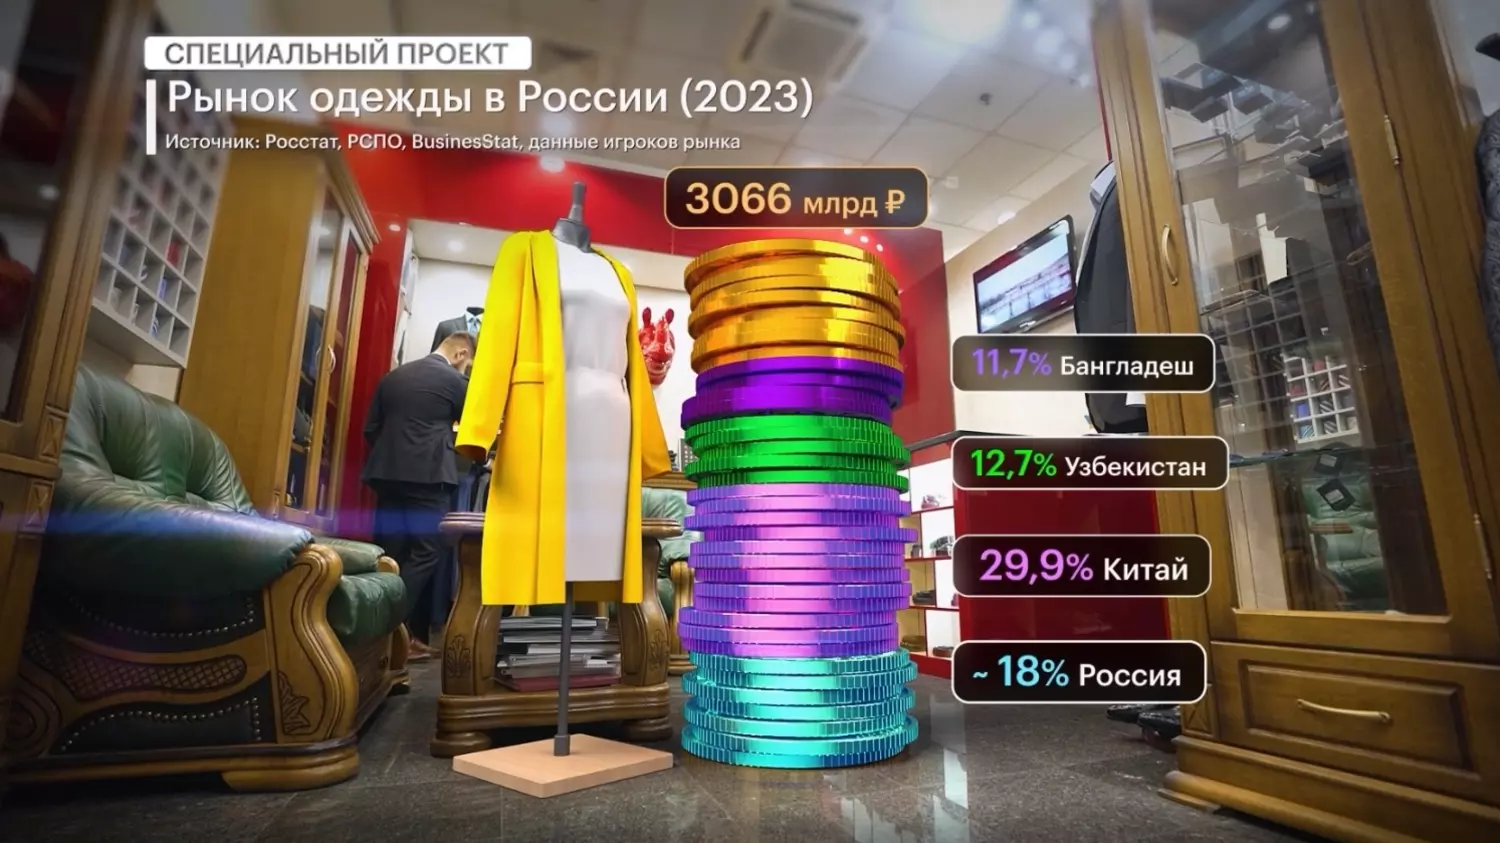 Оборот в 2023 году, по данным программы «Бизнес-вектор» на РБК, составил 3,066 трлн рублей